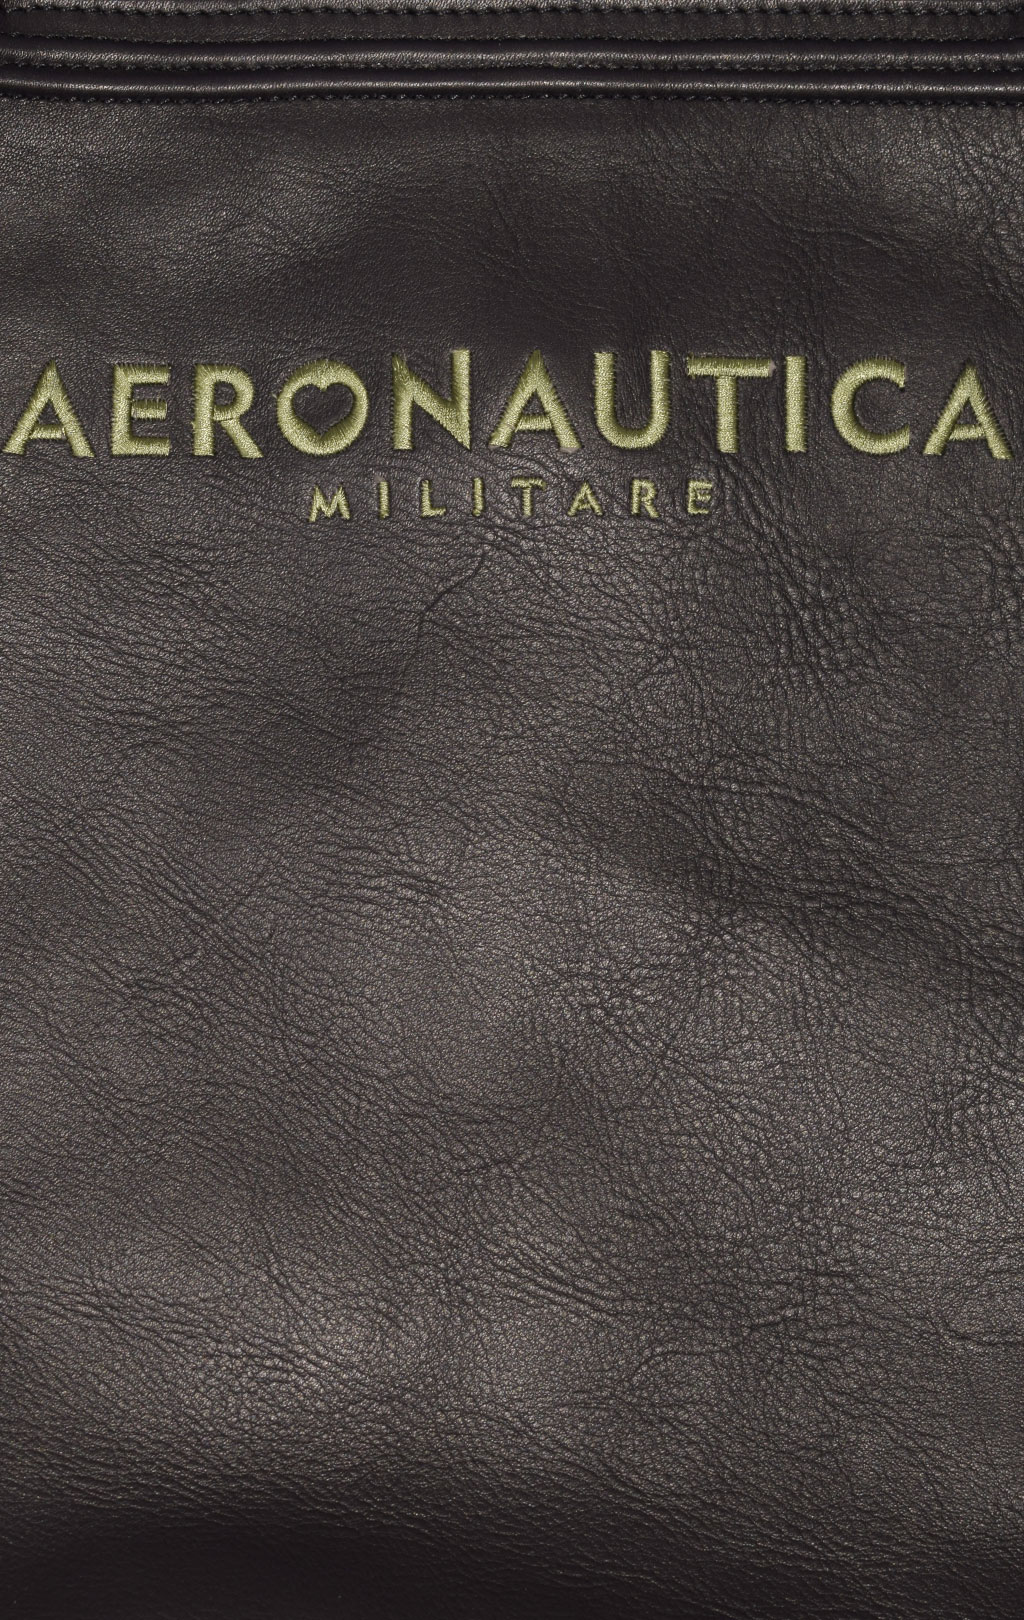 Женская сумка AERONAUTICA MILITARE LEATHER SHOPPER FW 23/24/IN nero-verde (BO 1102) 